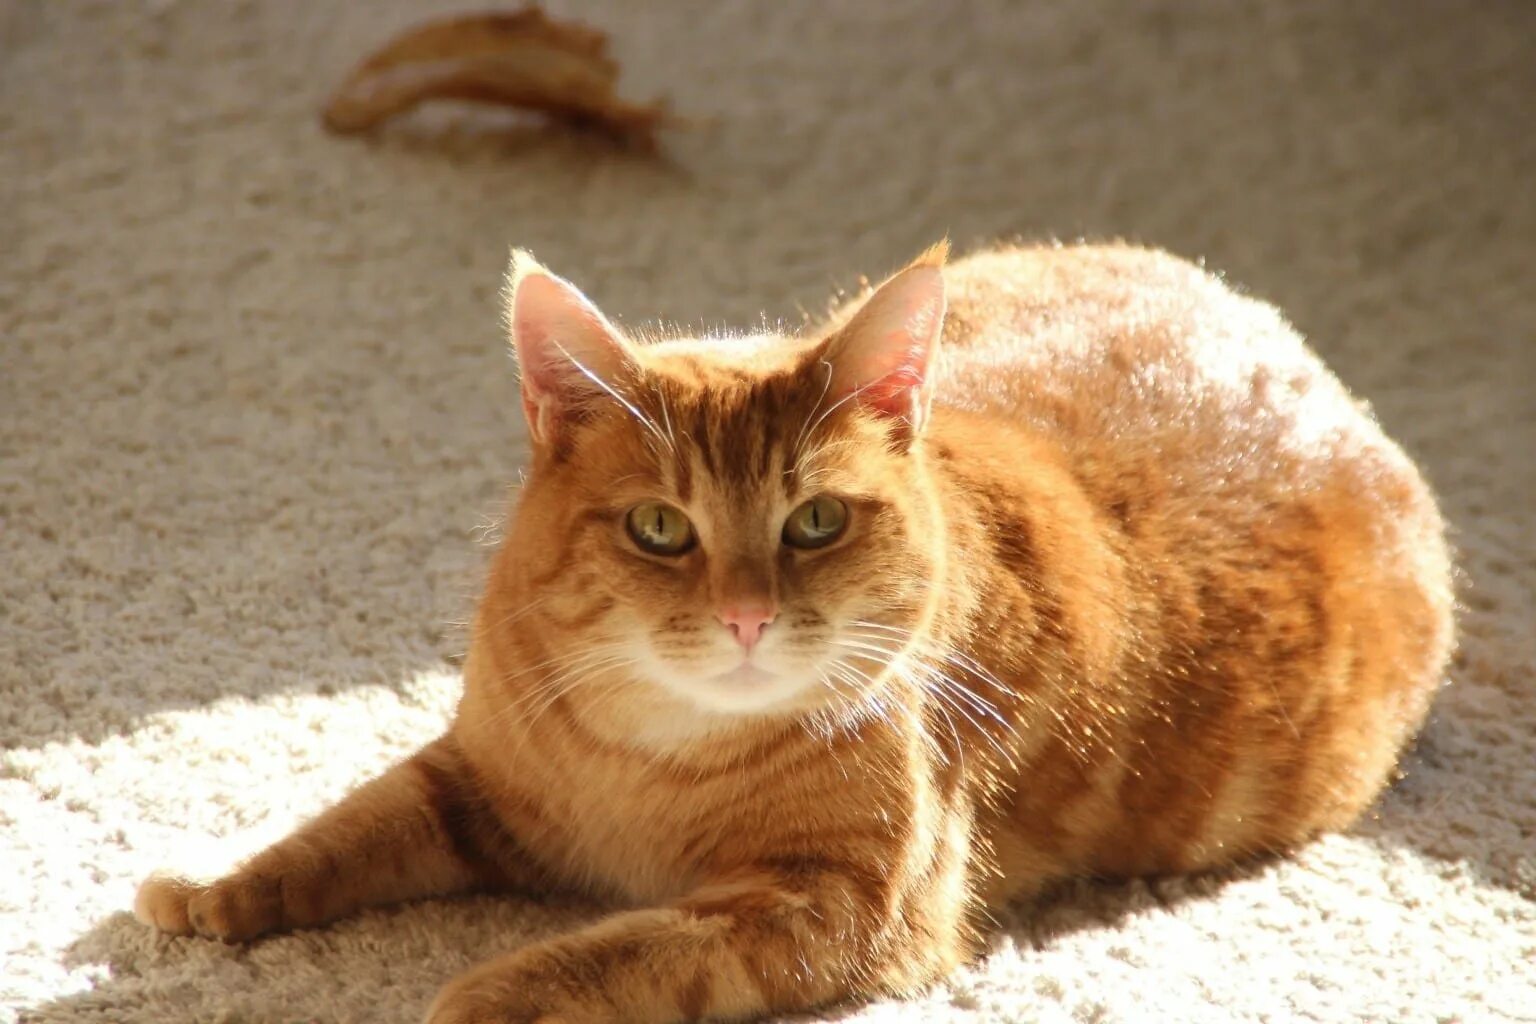 Бразильская короткошерстная кошка рыжая. Бразильский короткошерстный кот рыжий. Бразильская короткошерстная кошка фото рыжая. Бенгальская короткошерстная кошка рыжая. Кошечка желтая